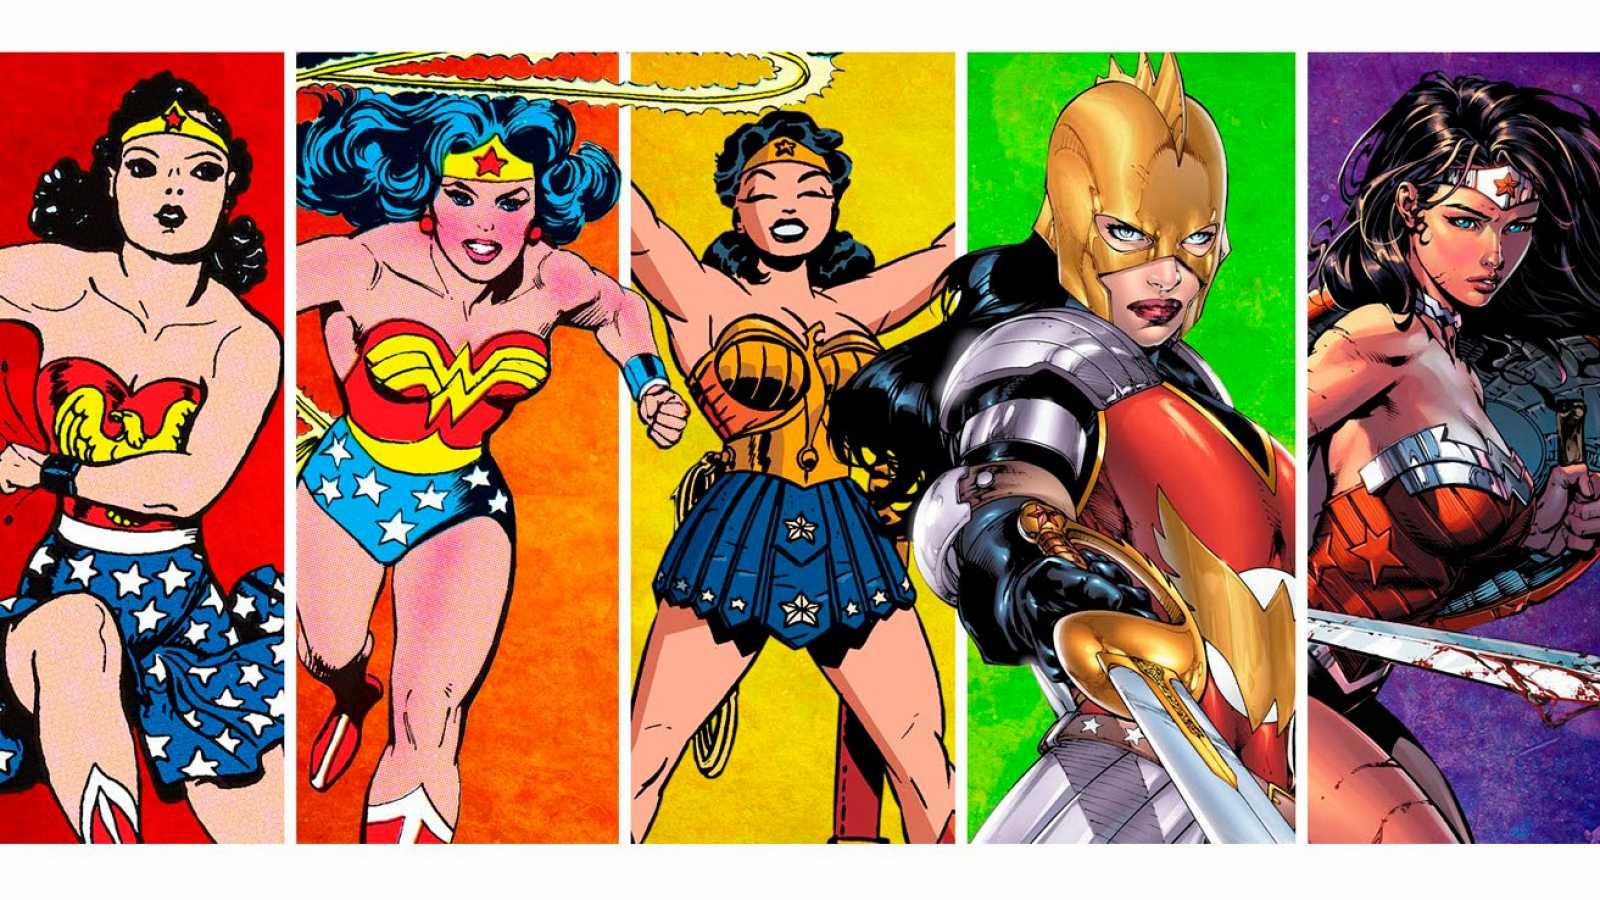 Il mito eterno di Wonder Woman conquista Milano, la mostra